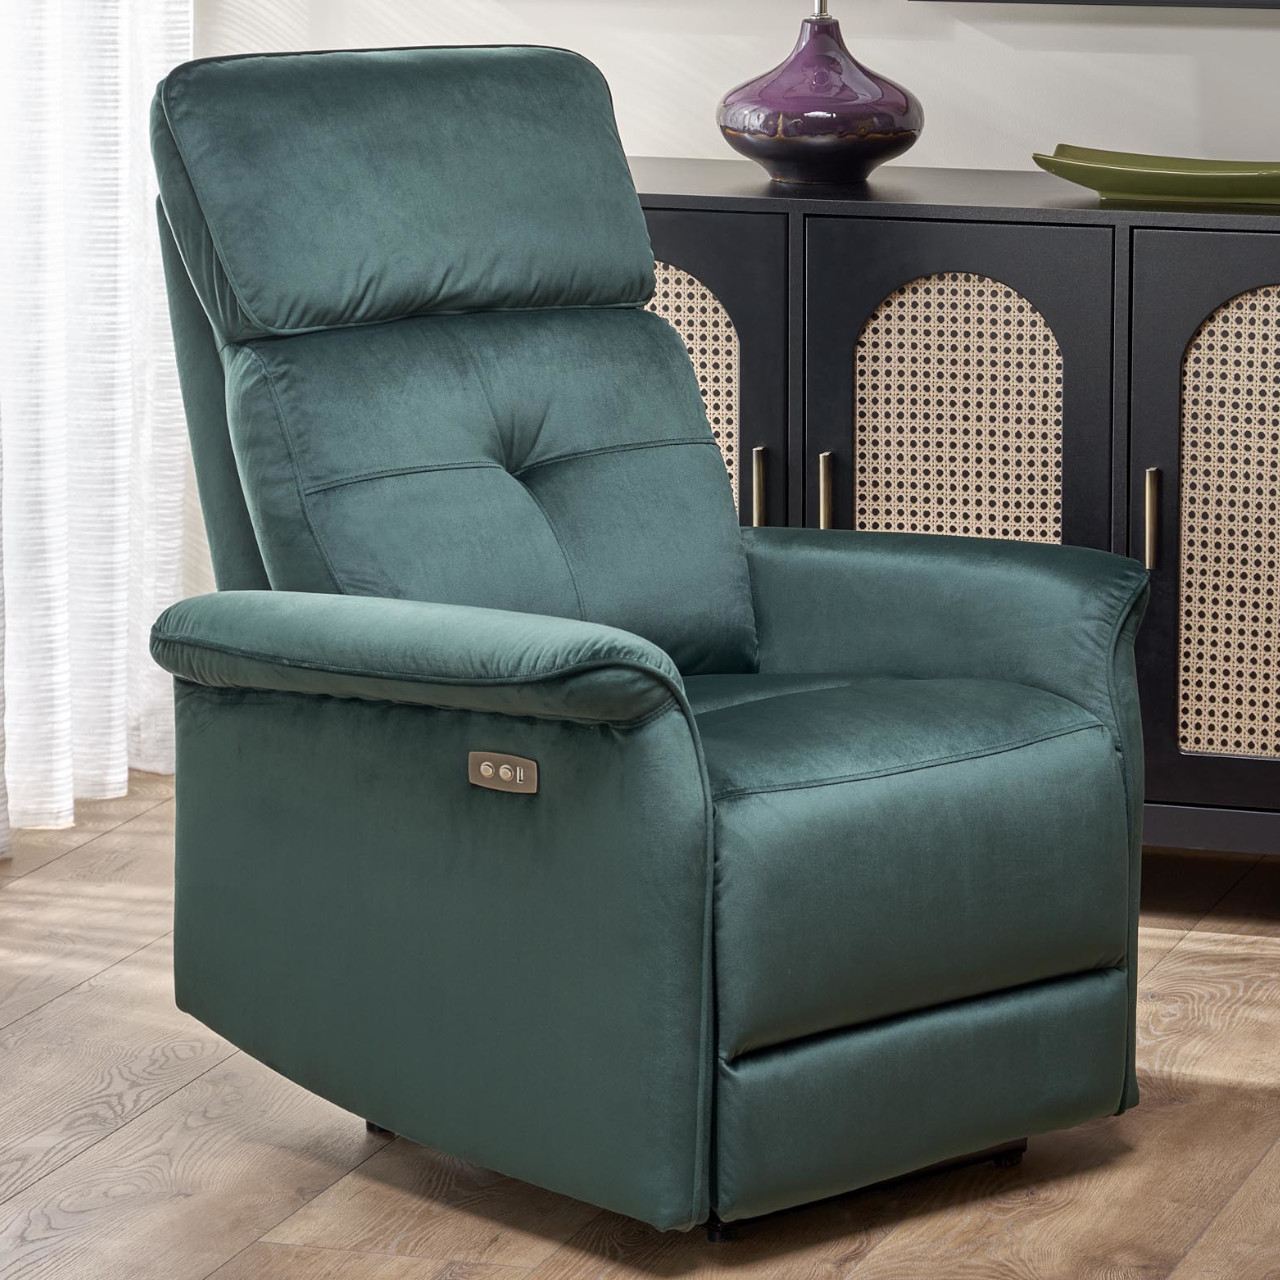 Recliner armchair SAFIR dark green